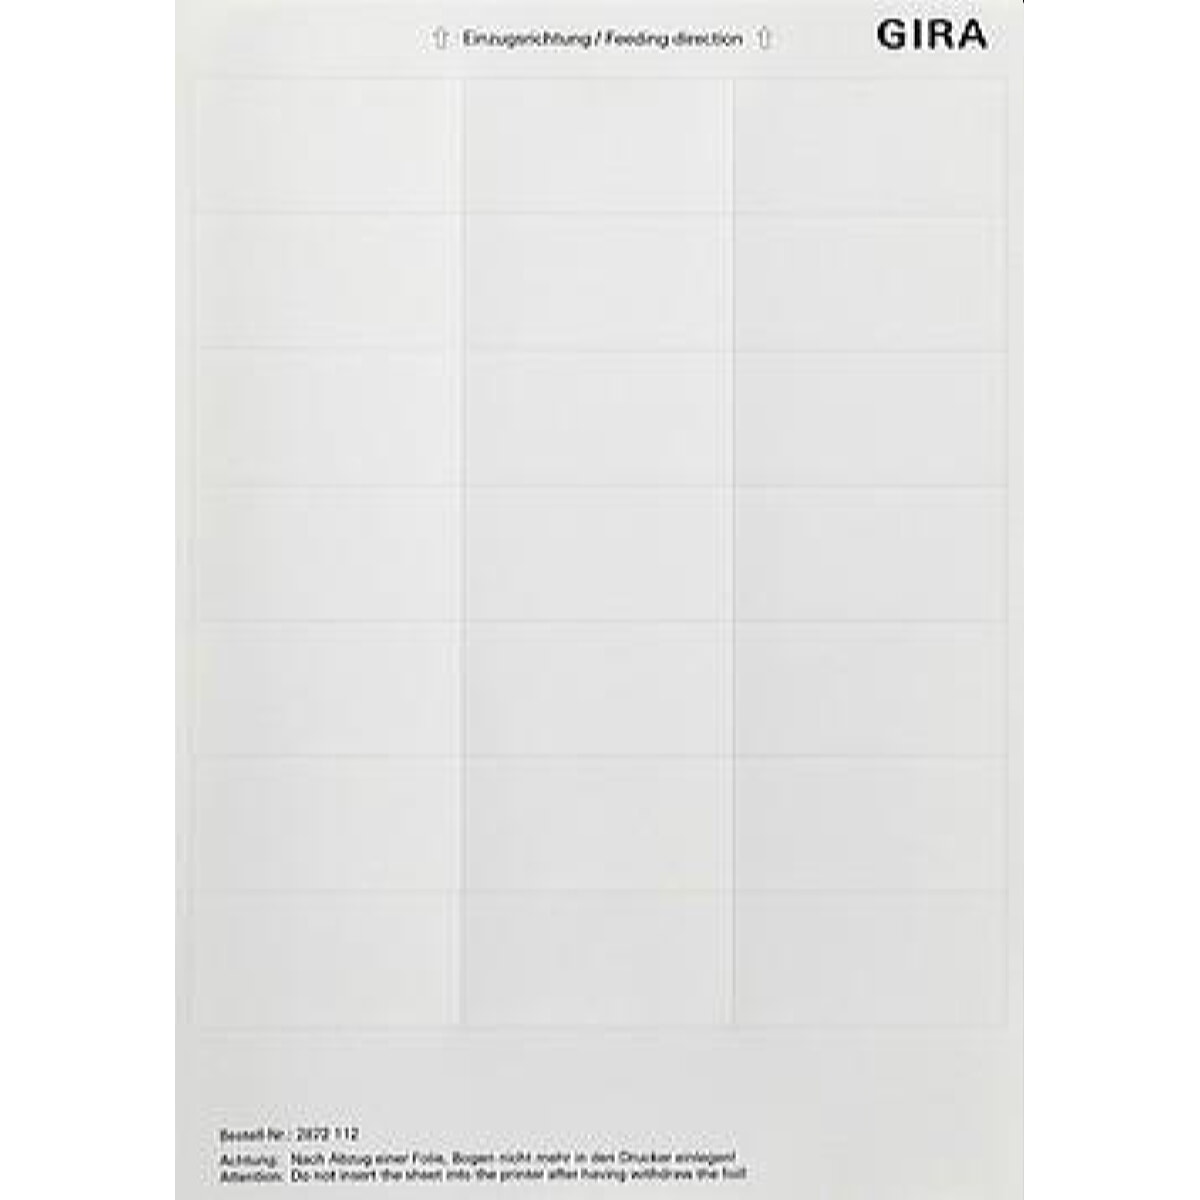 Gira Beschriftungsbogen 2872112 33,5x67mm reinweiss